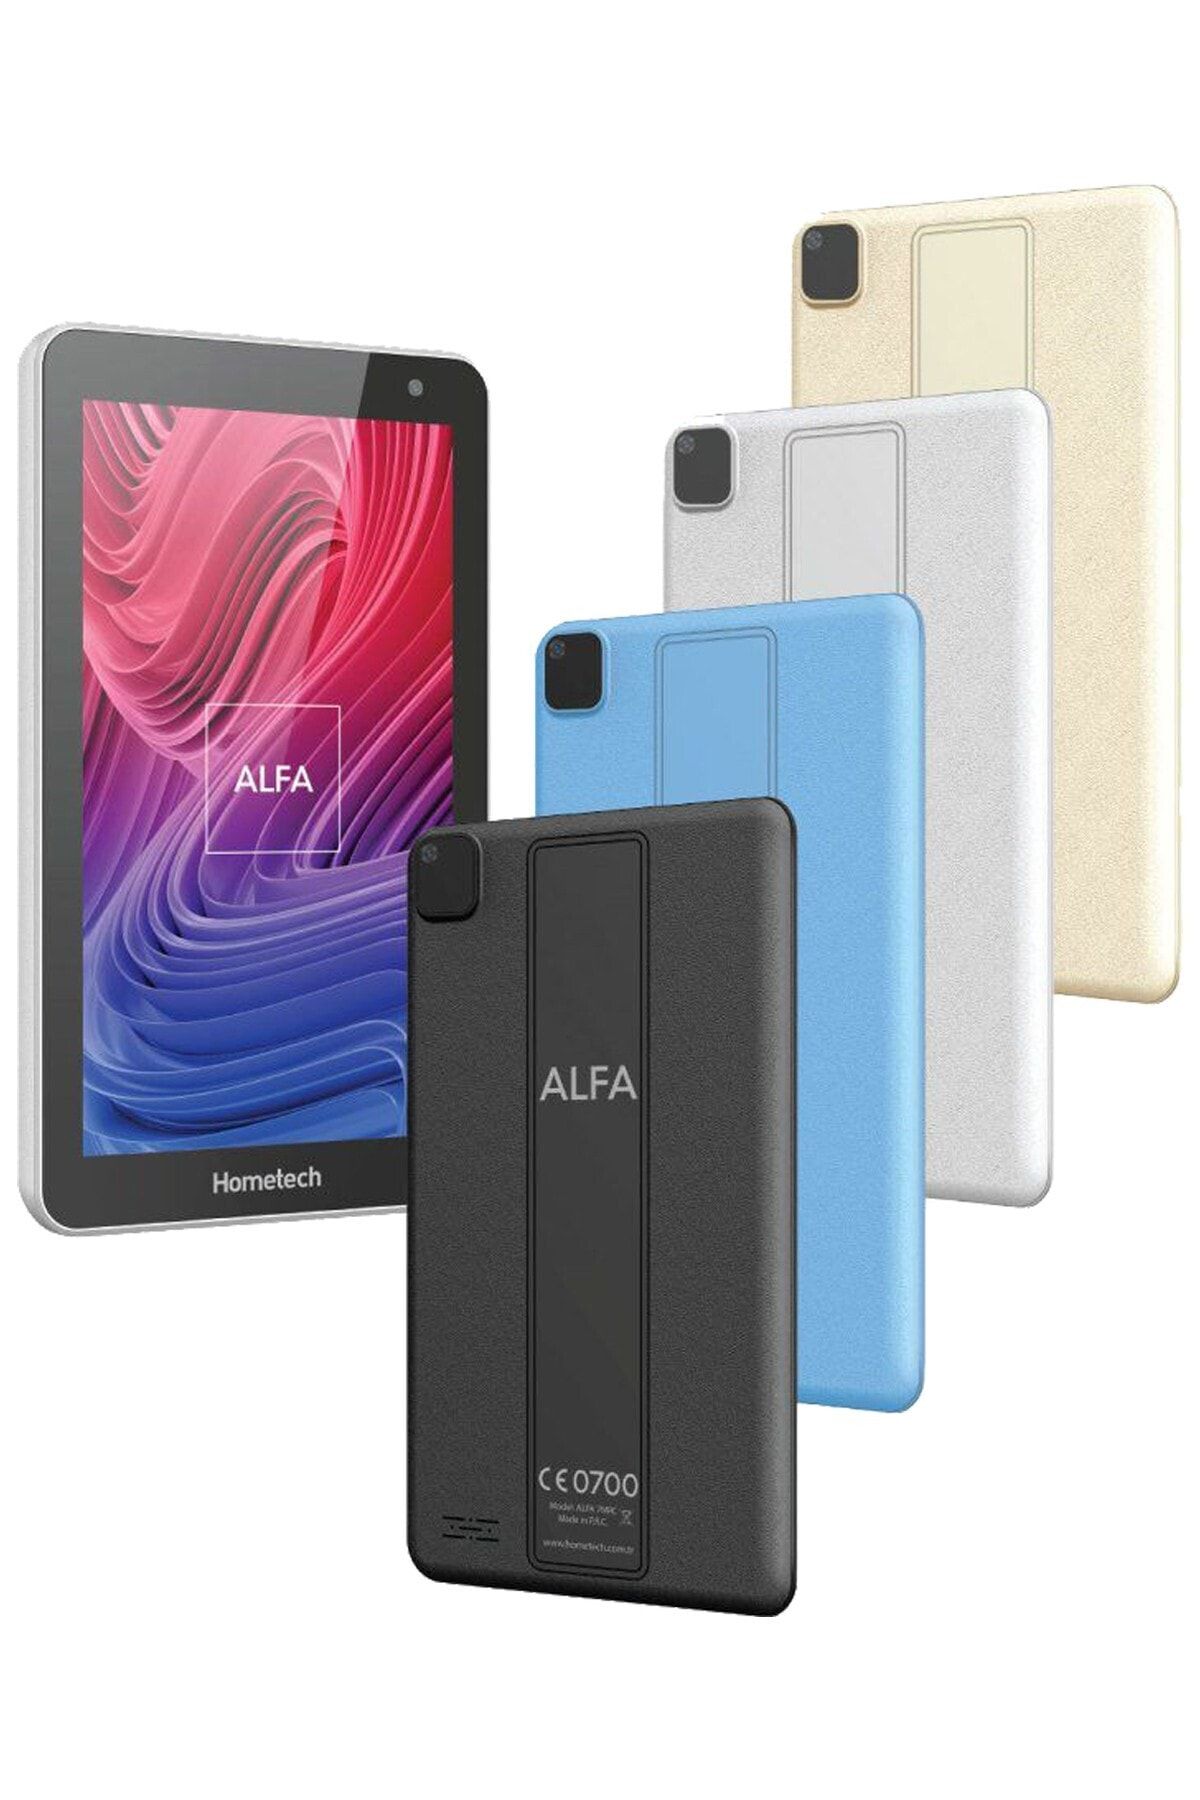 Hometech Alfa 7mrc Premium 2 Gb 32 Gb 7" Ips Tablet Bilgisayar